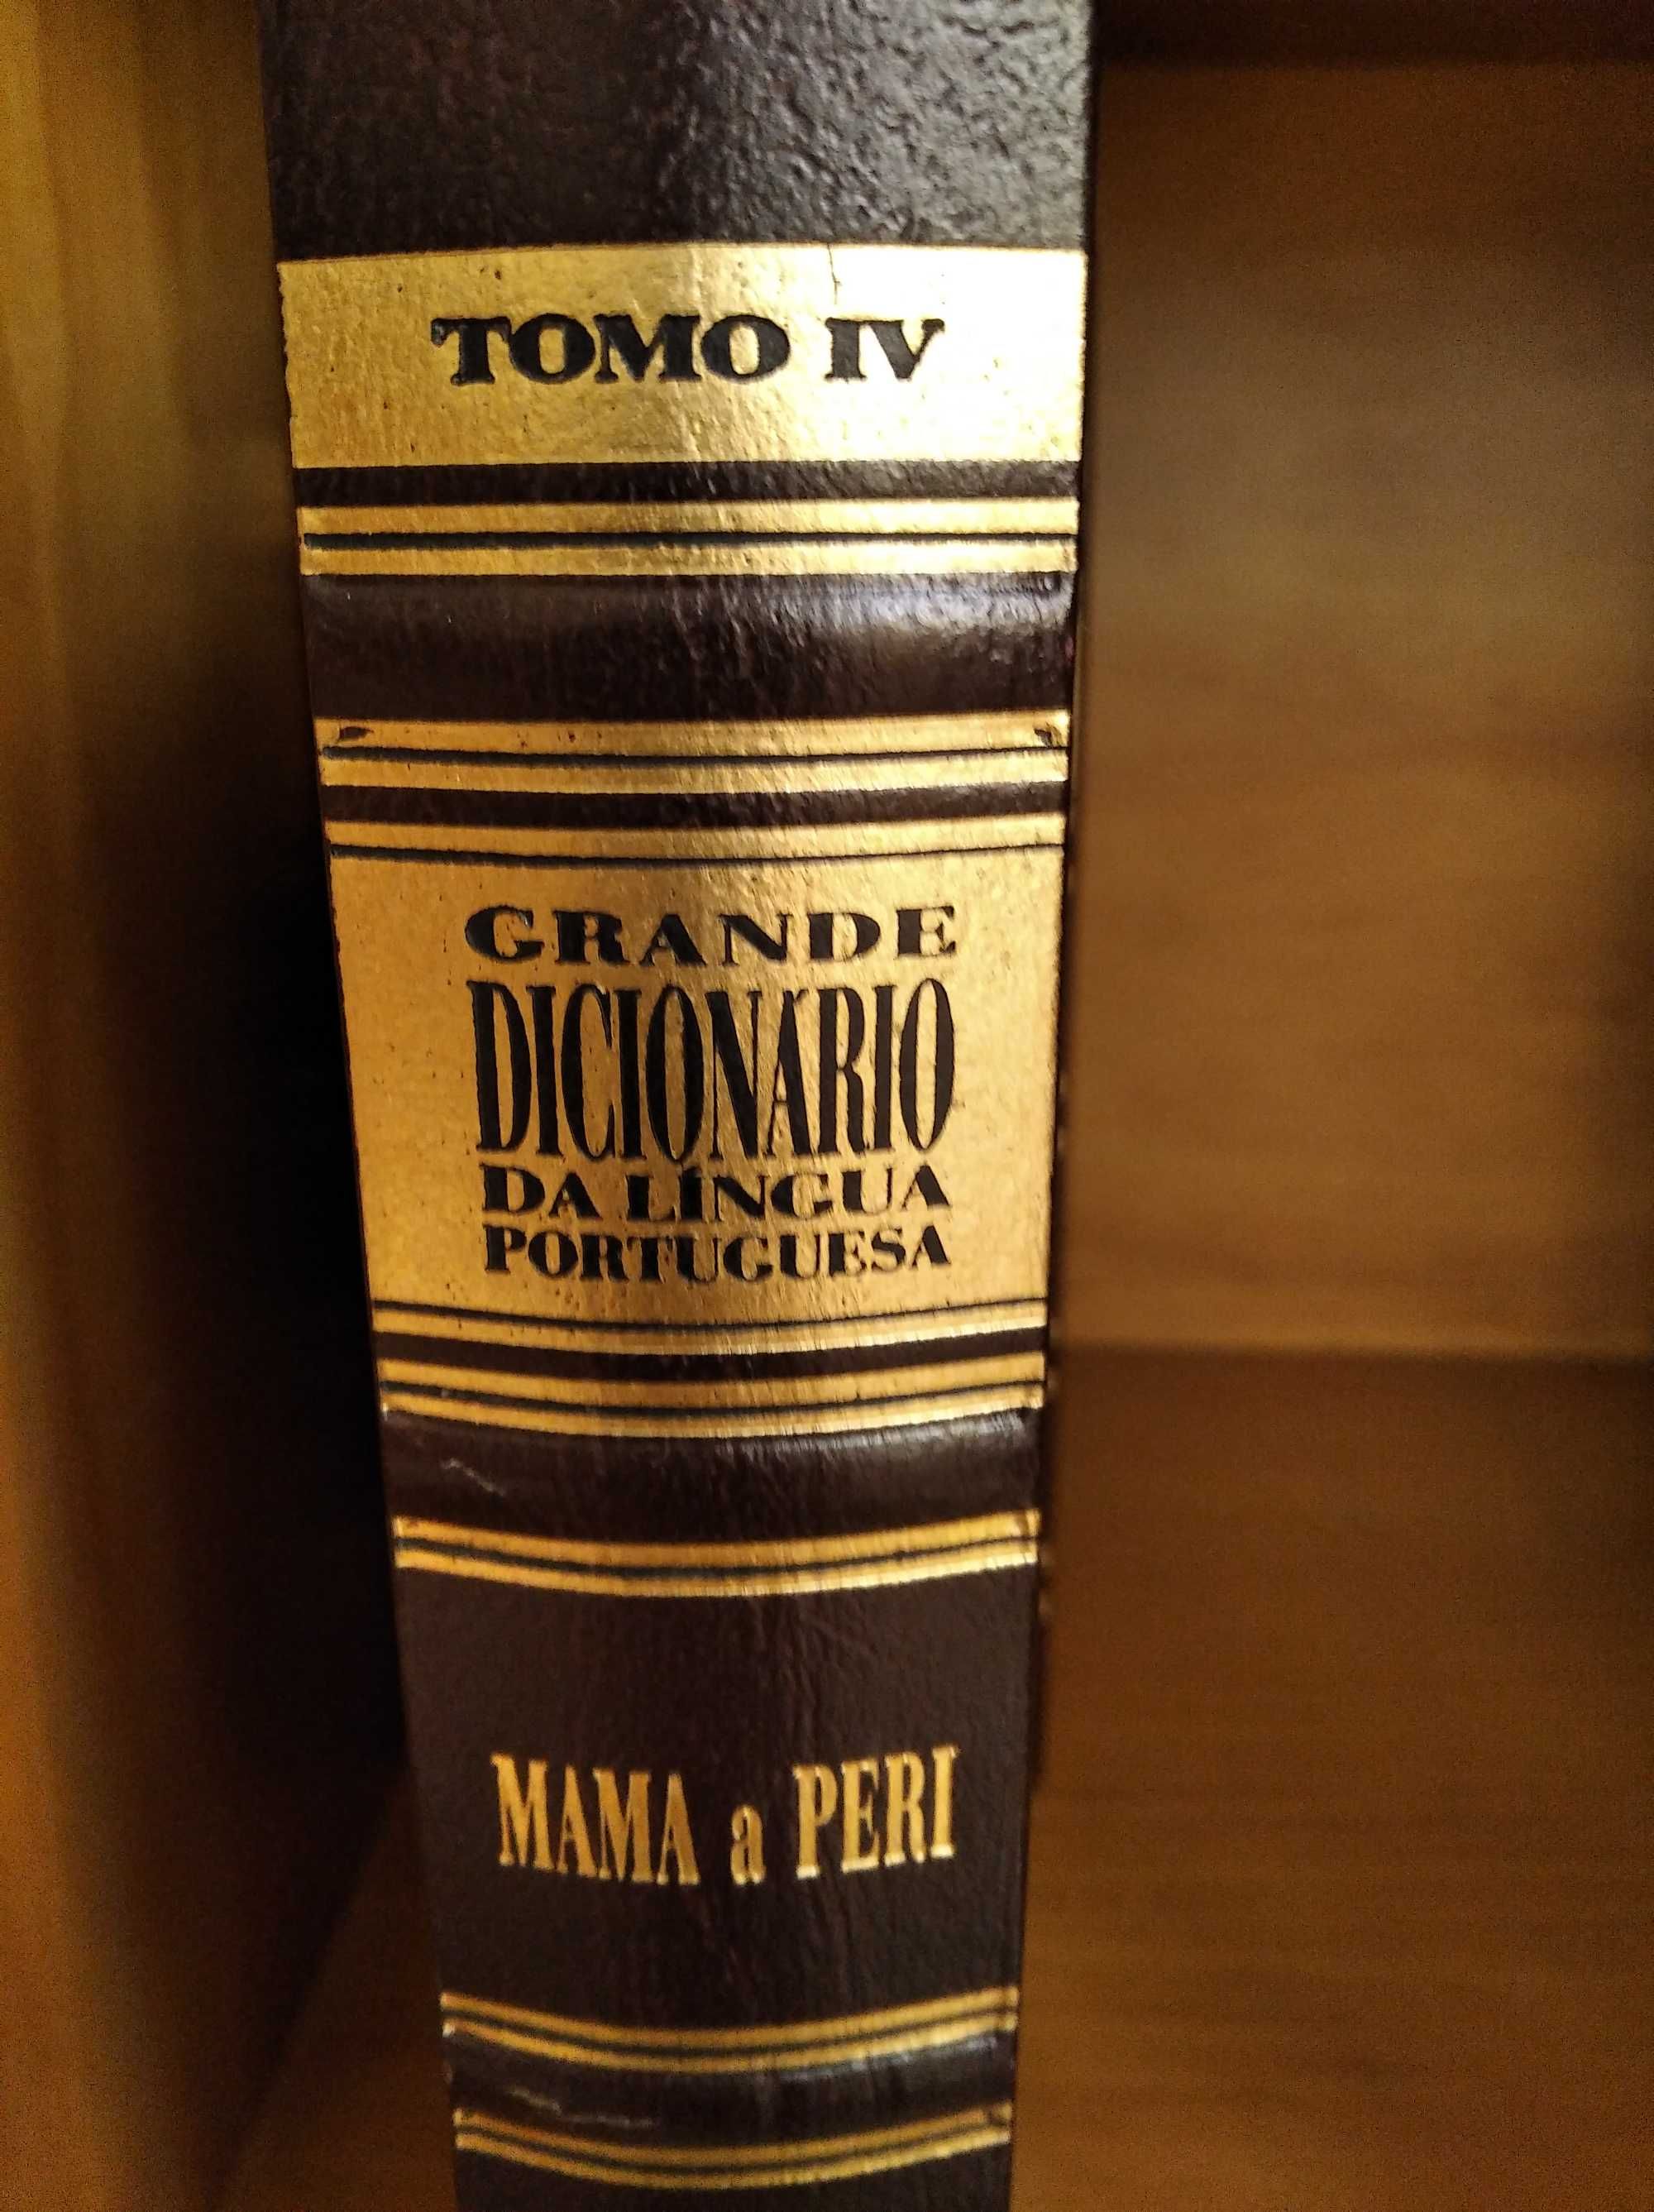 Coleção de 6 volumes de dicionários portugueses